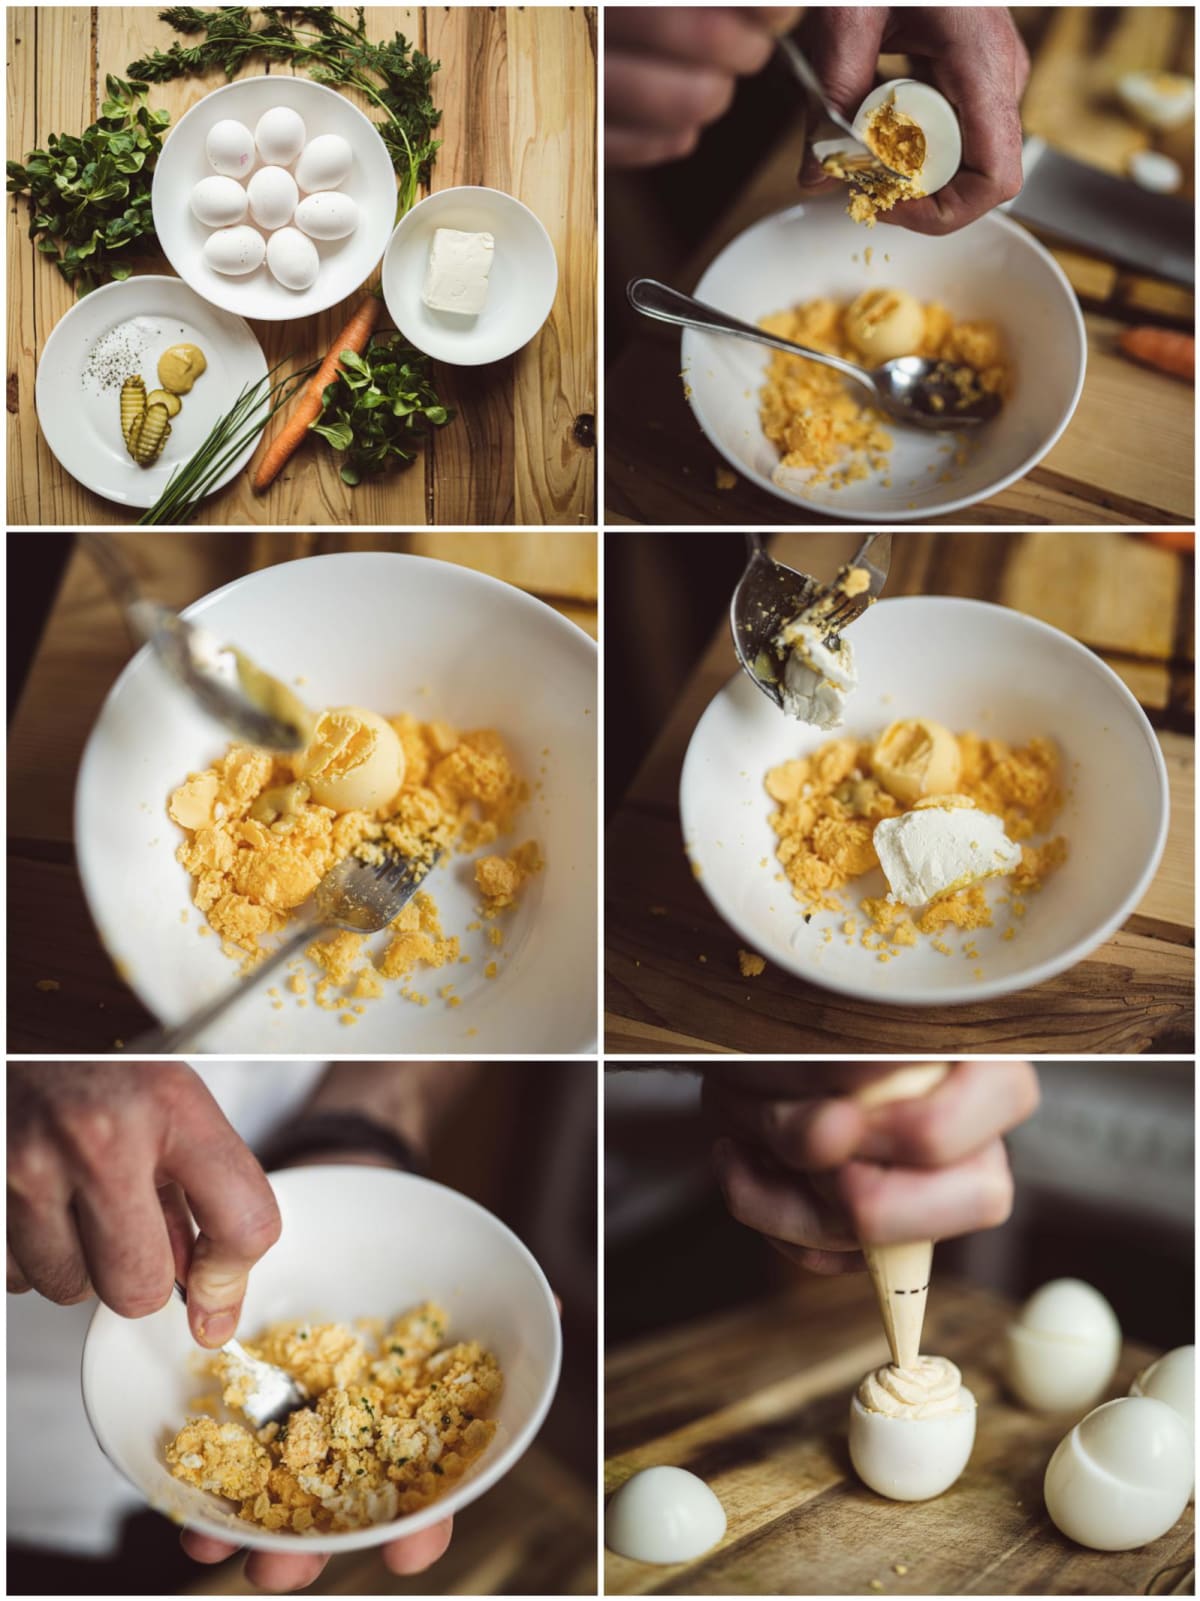 Kuřátka z vařených vajec – tak trochu jiná plněná vejce